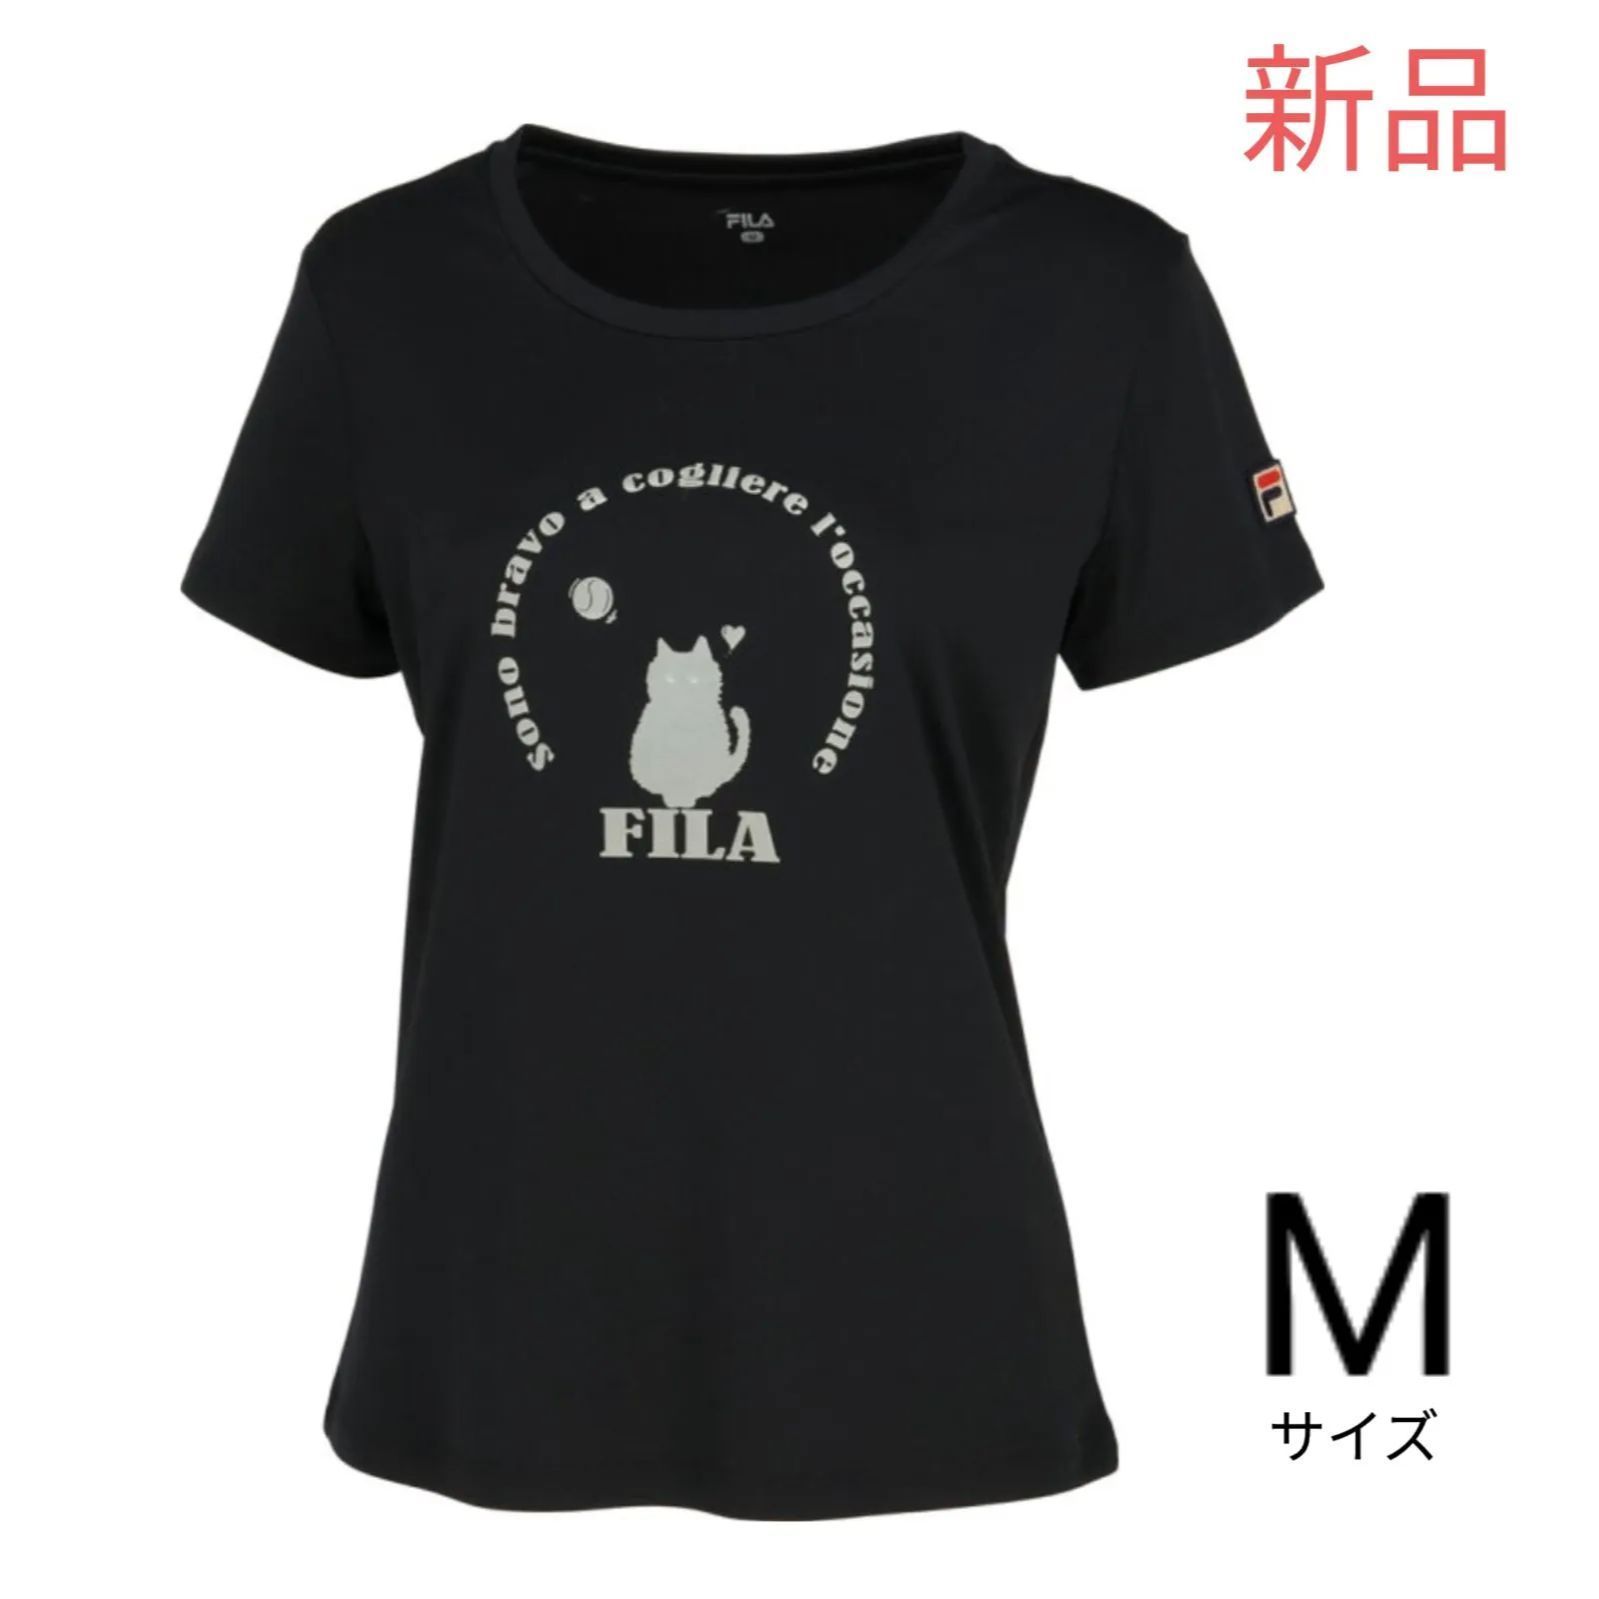 FILA フィラ テニス ウェア シャツ Mサイズ 新品未使用 黒 - メルカリ